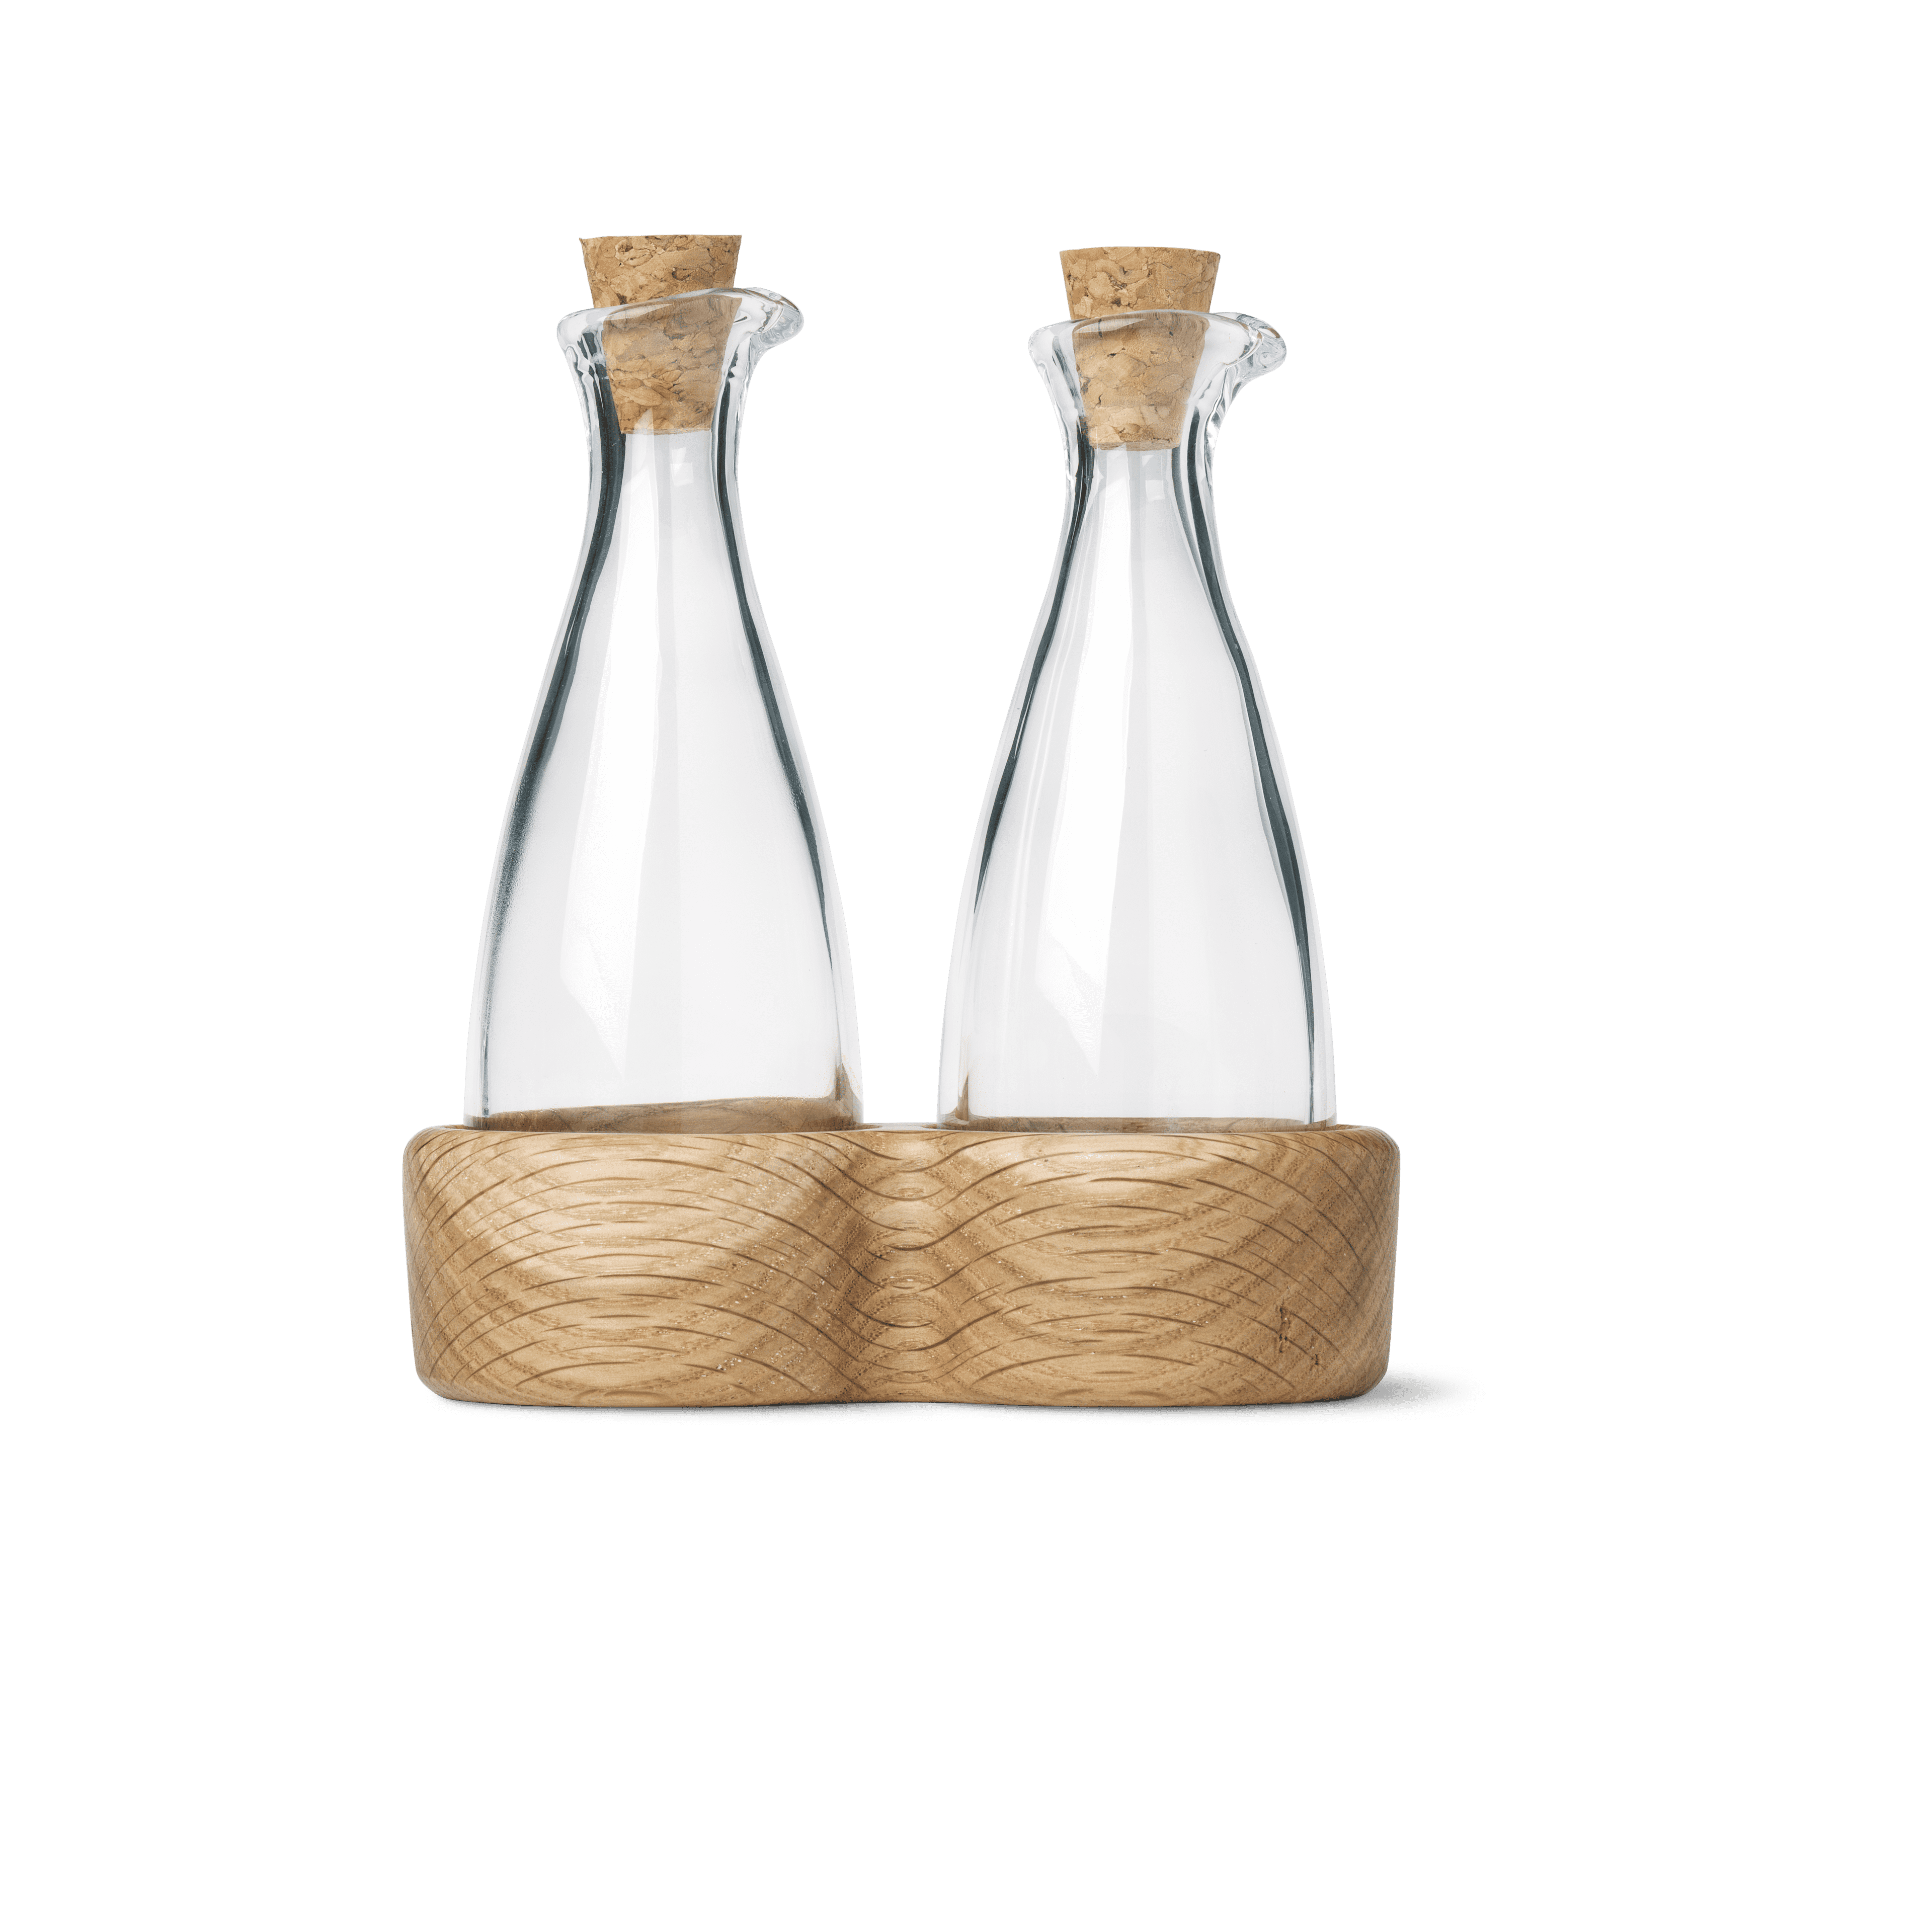 Oil and vinegar bottles H15 cm